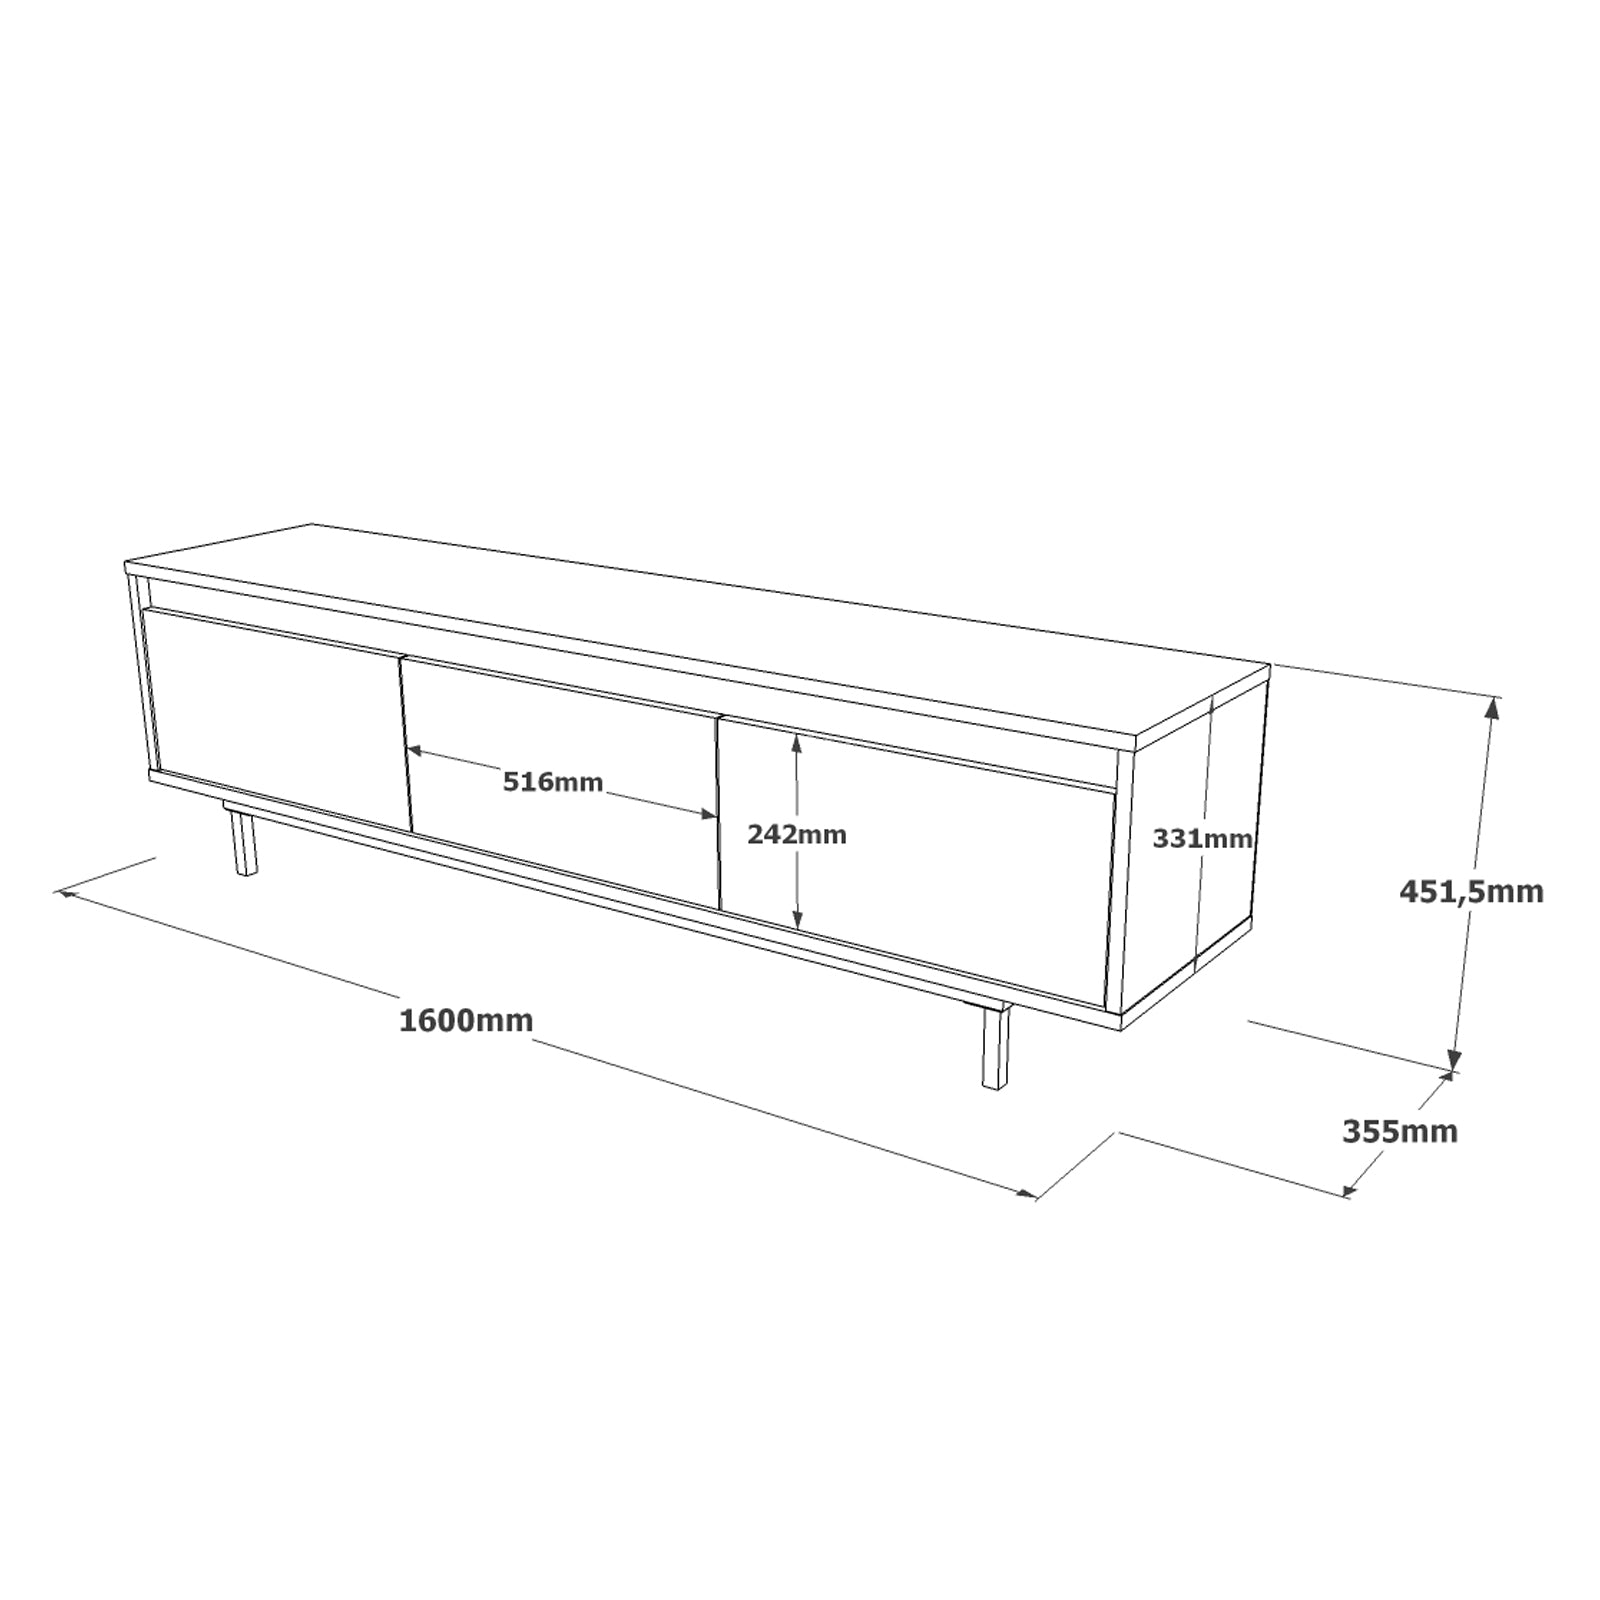 gris-Salon moderne accueillant le meuble TV MIRAGE 160cm- alliance de bois et de métal noir